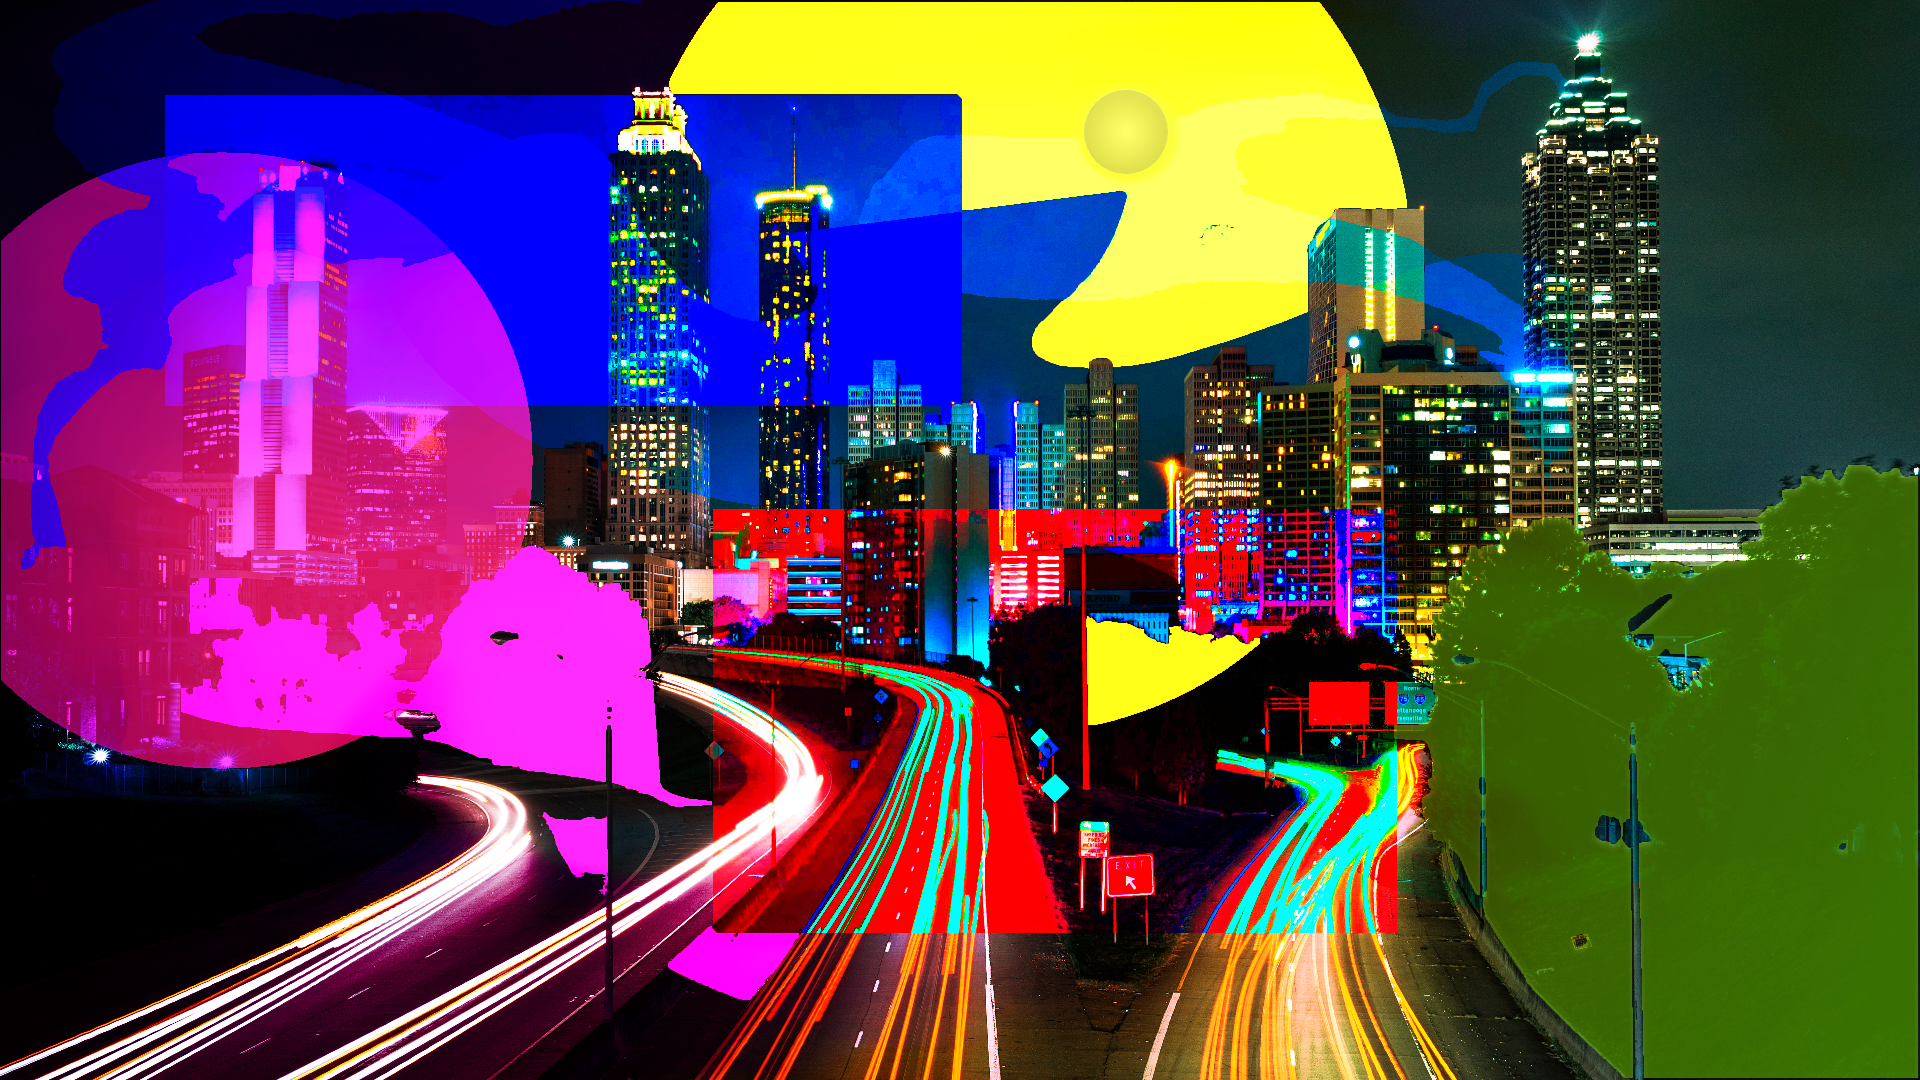 remixable city challenge - utworzony przez Drew z paint